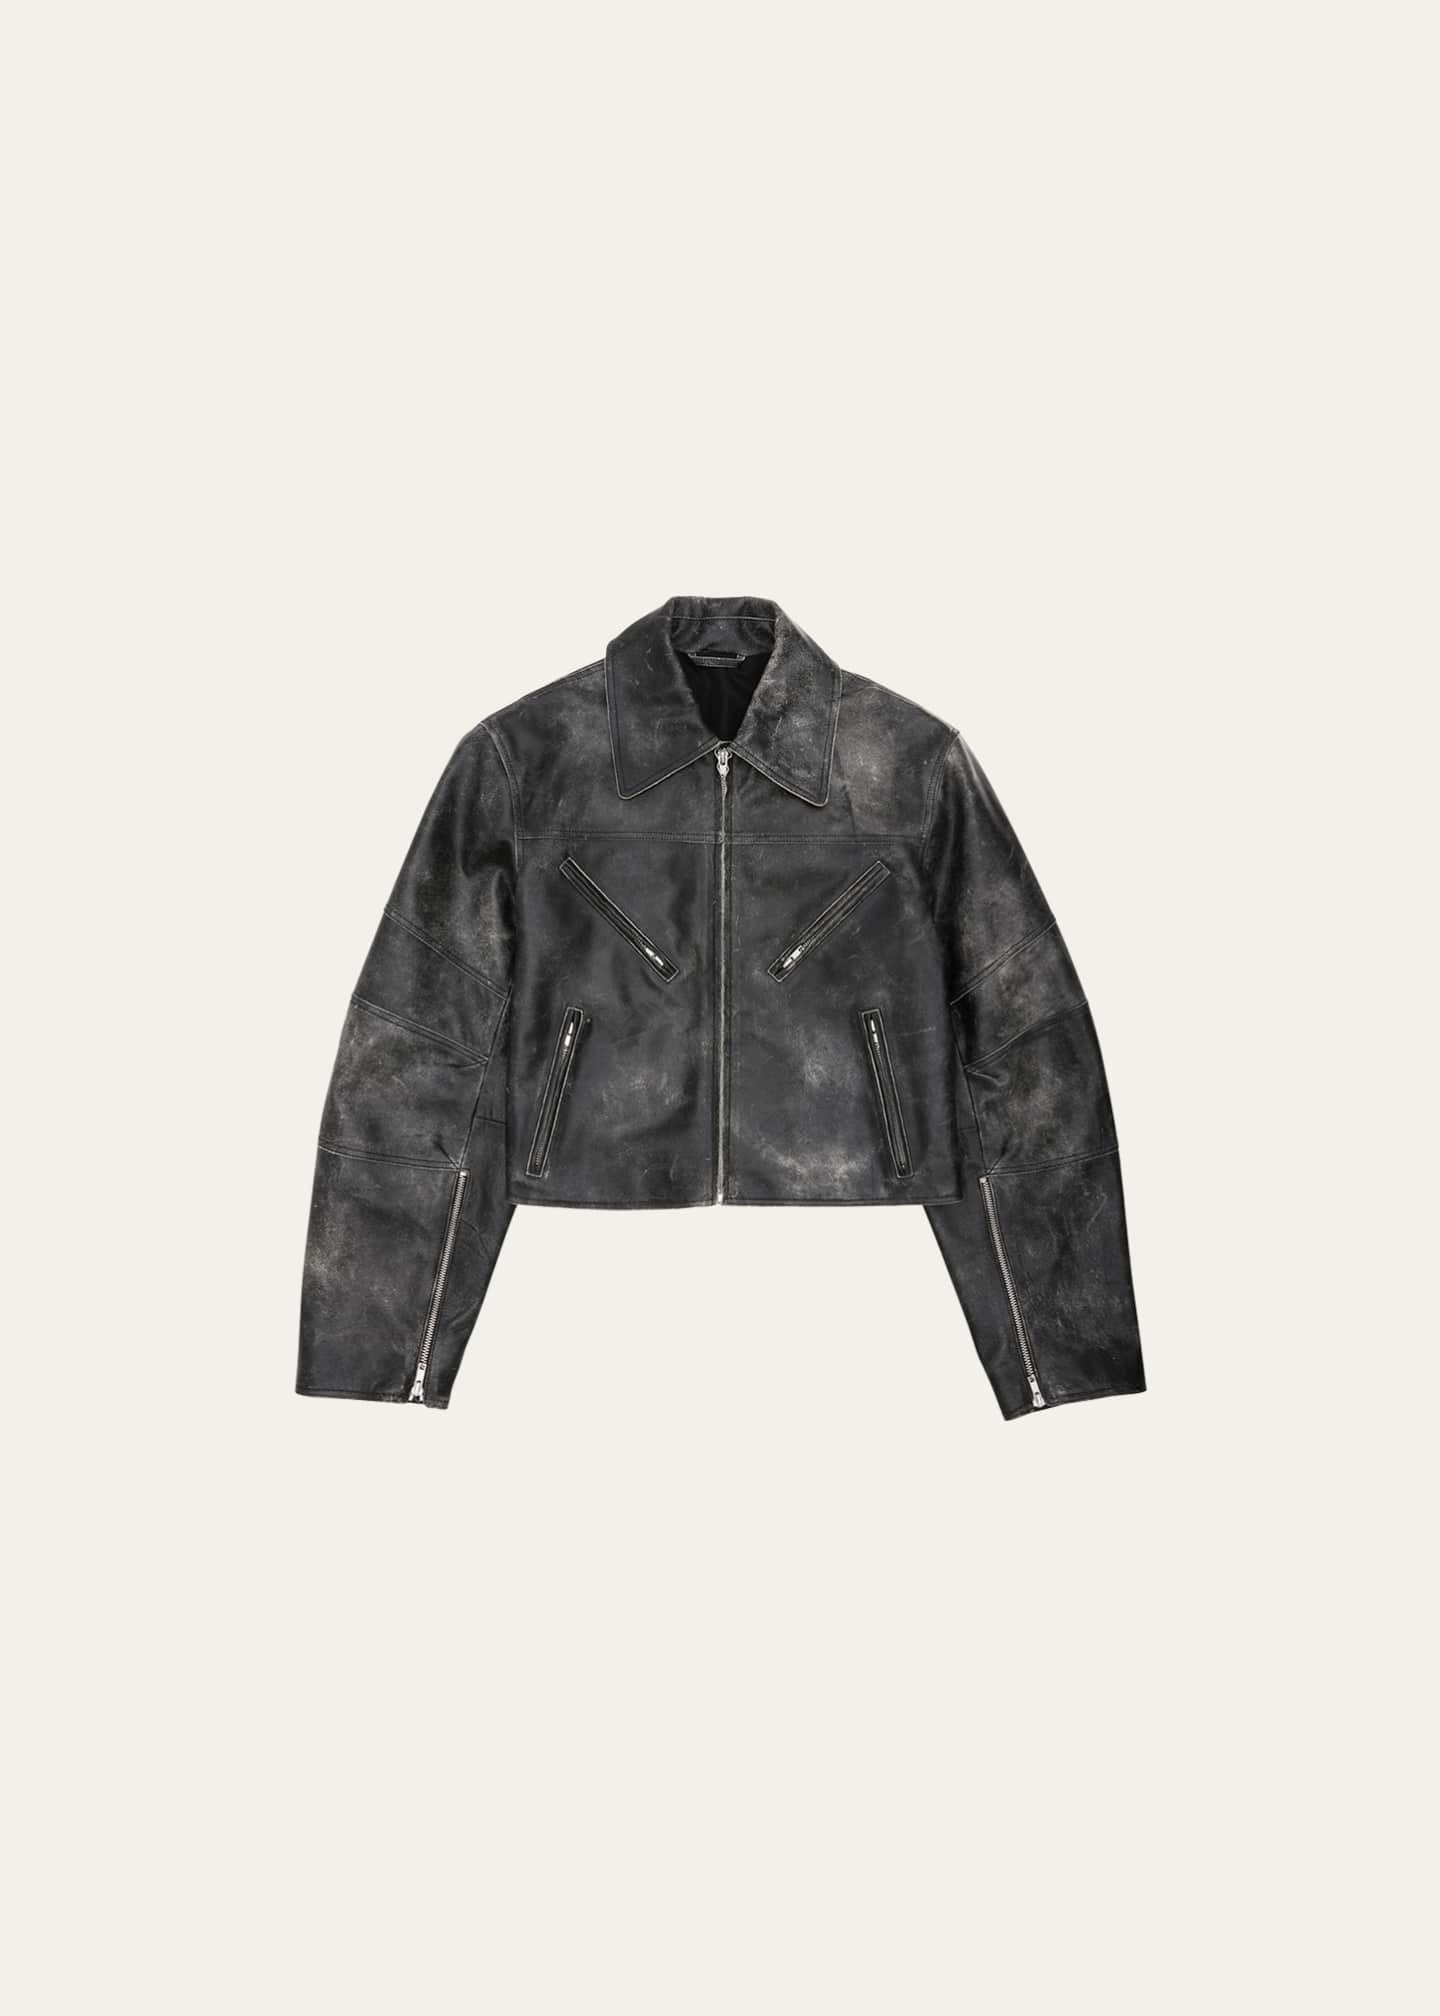 Helmut Lang Distressed Leather Biker Jacket